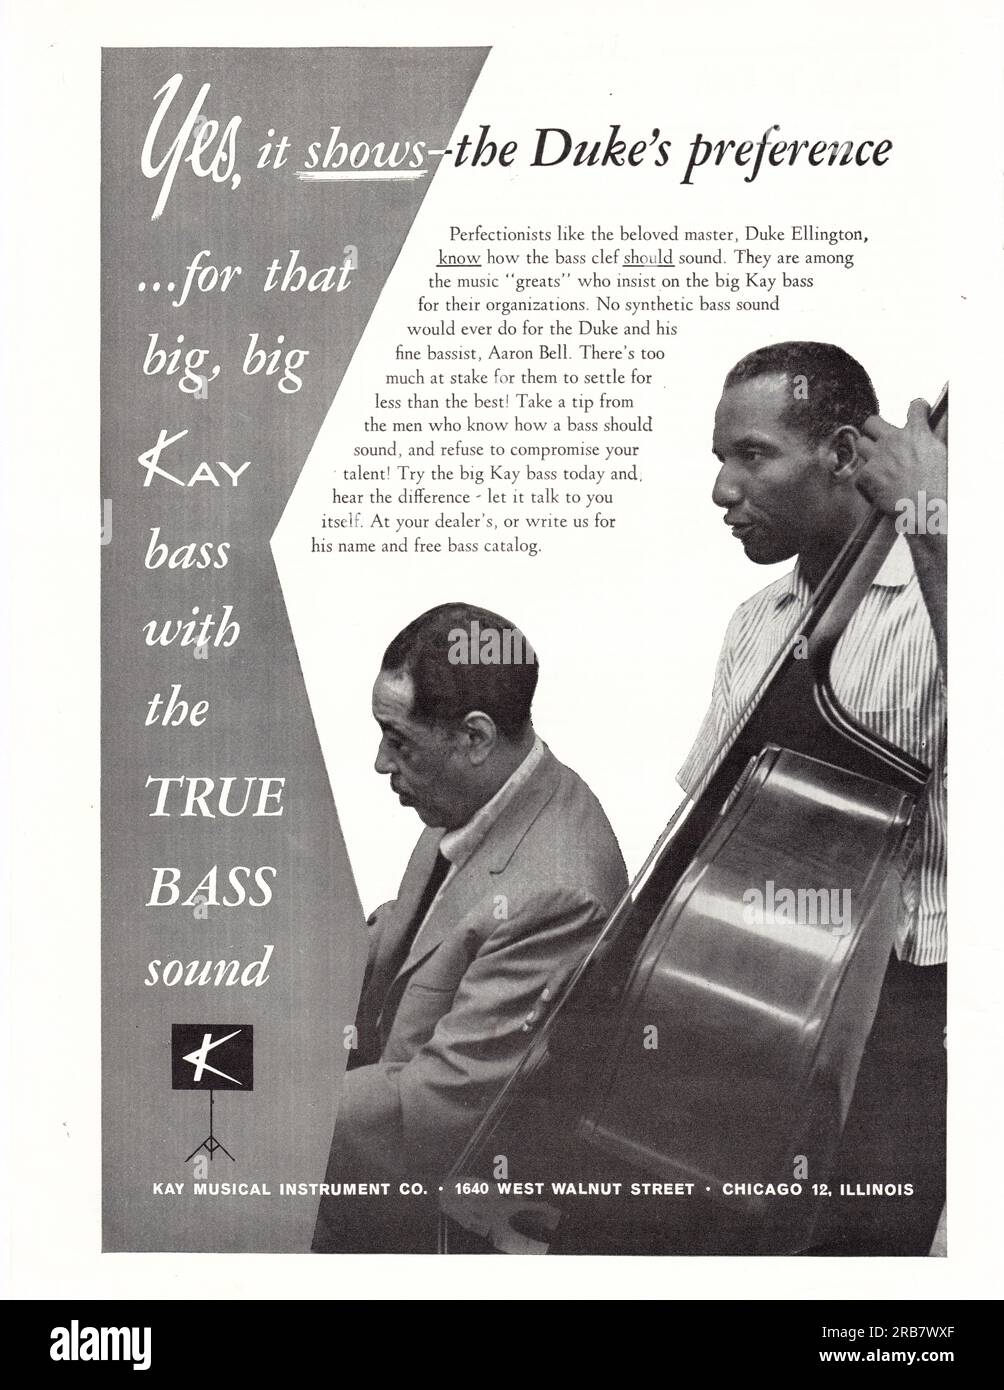 Eine Vintage-Anzeige für einen Kay Bass mit Duke Ellington und seinem Bassspieler der Zeit, Aaron Bell. Aus einem Musikmagazin aus den frühen 1960er Jahren. Stockfoto